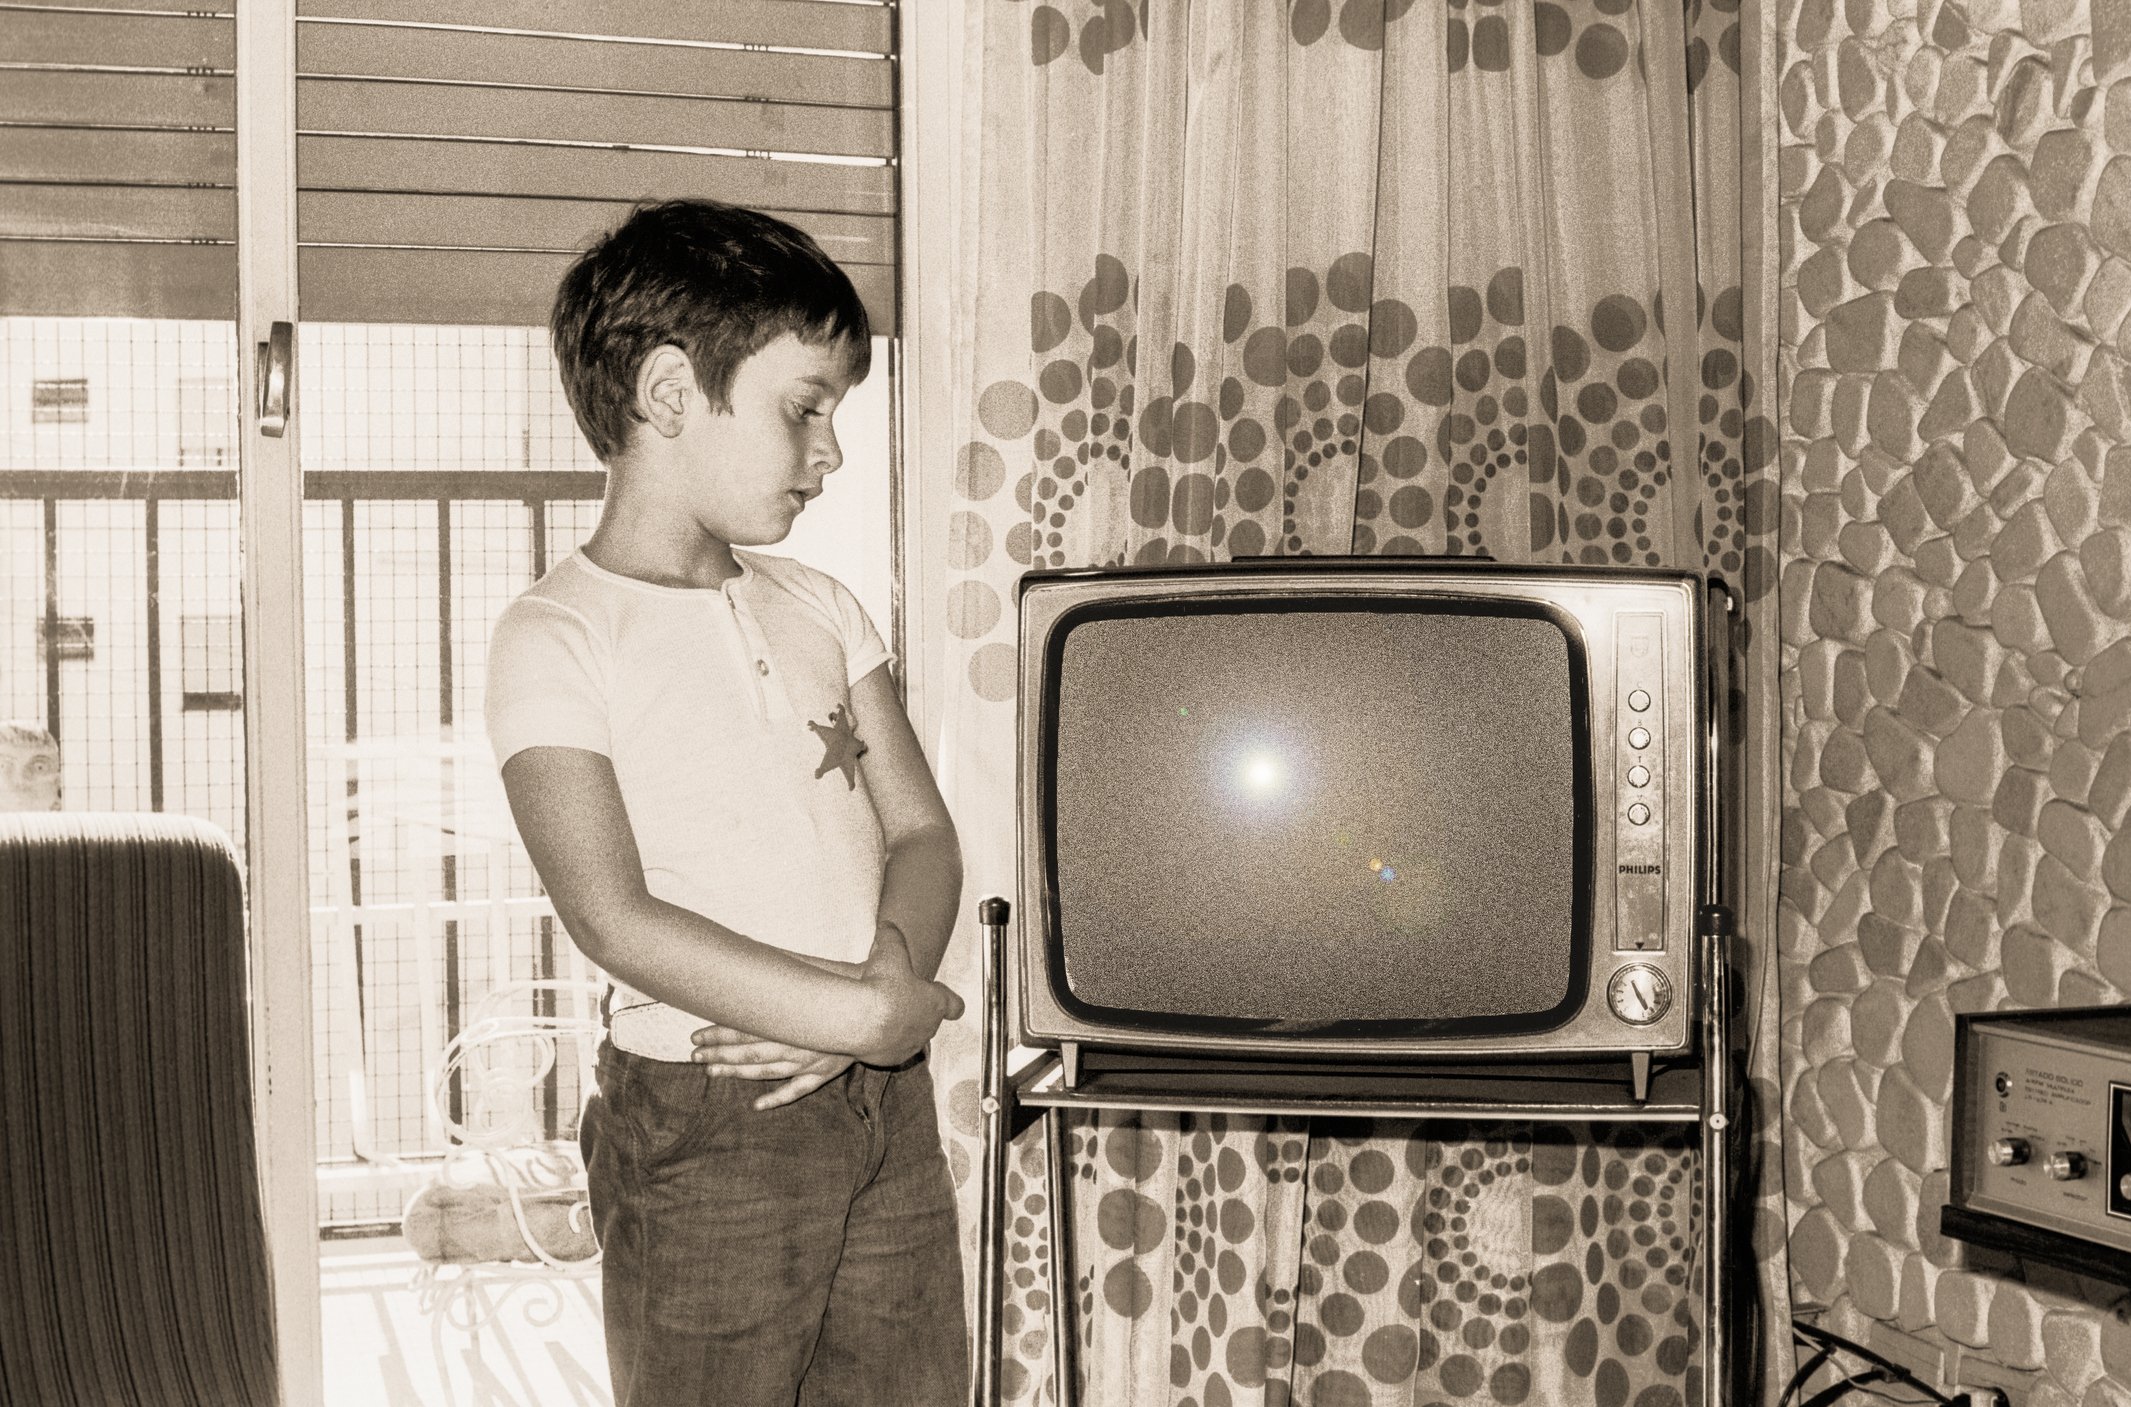 Кинопоиск на старом телевизоре. Ламповый телевизор сигнал 2. Мальчик у телевизора. Мальчик старый телевизор. Транзисторный телевизор.